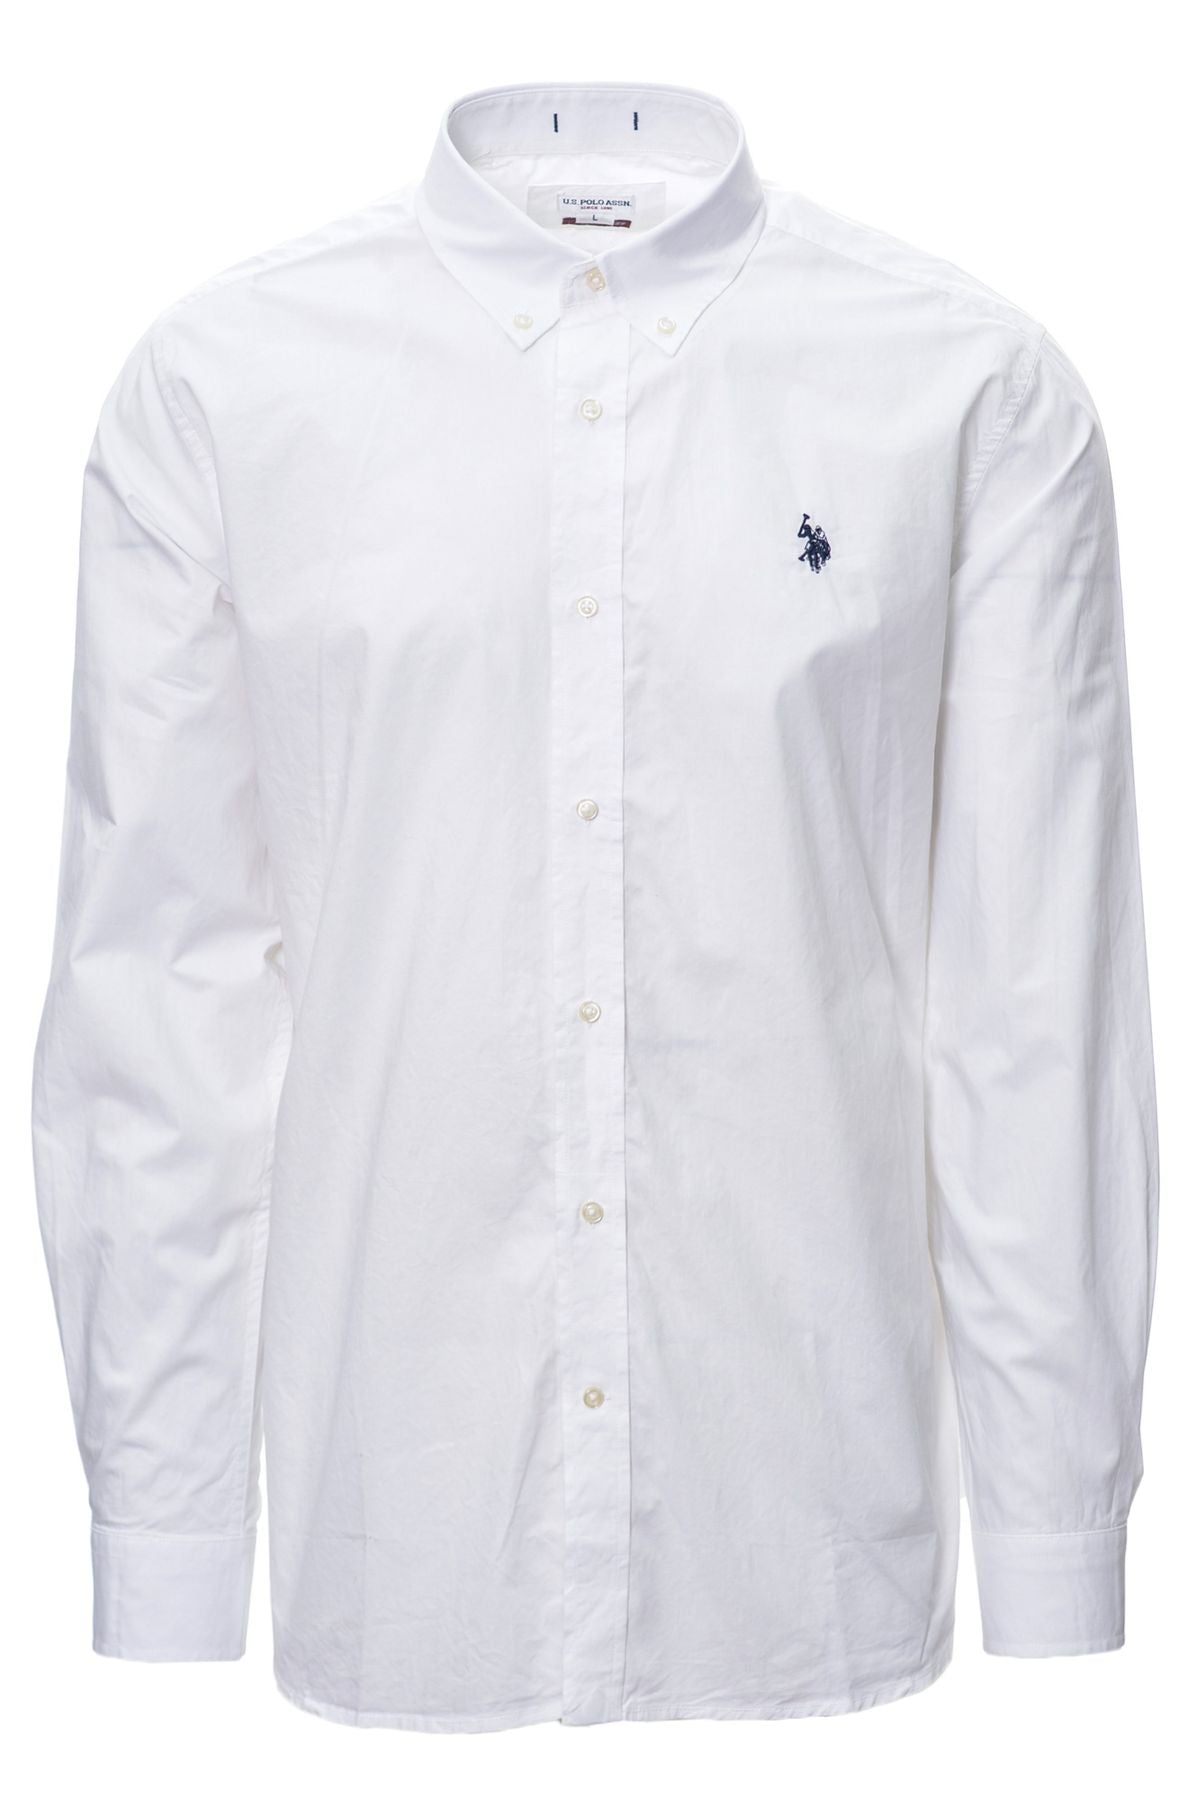 USPOLO Spring/Summer Cotton Shirts